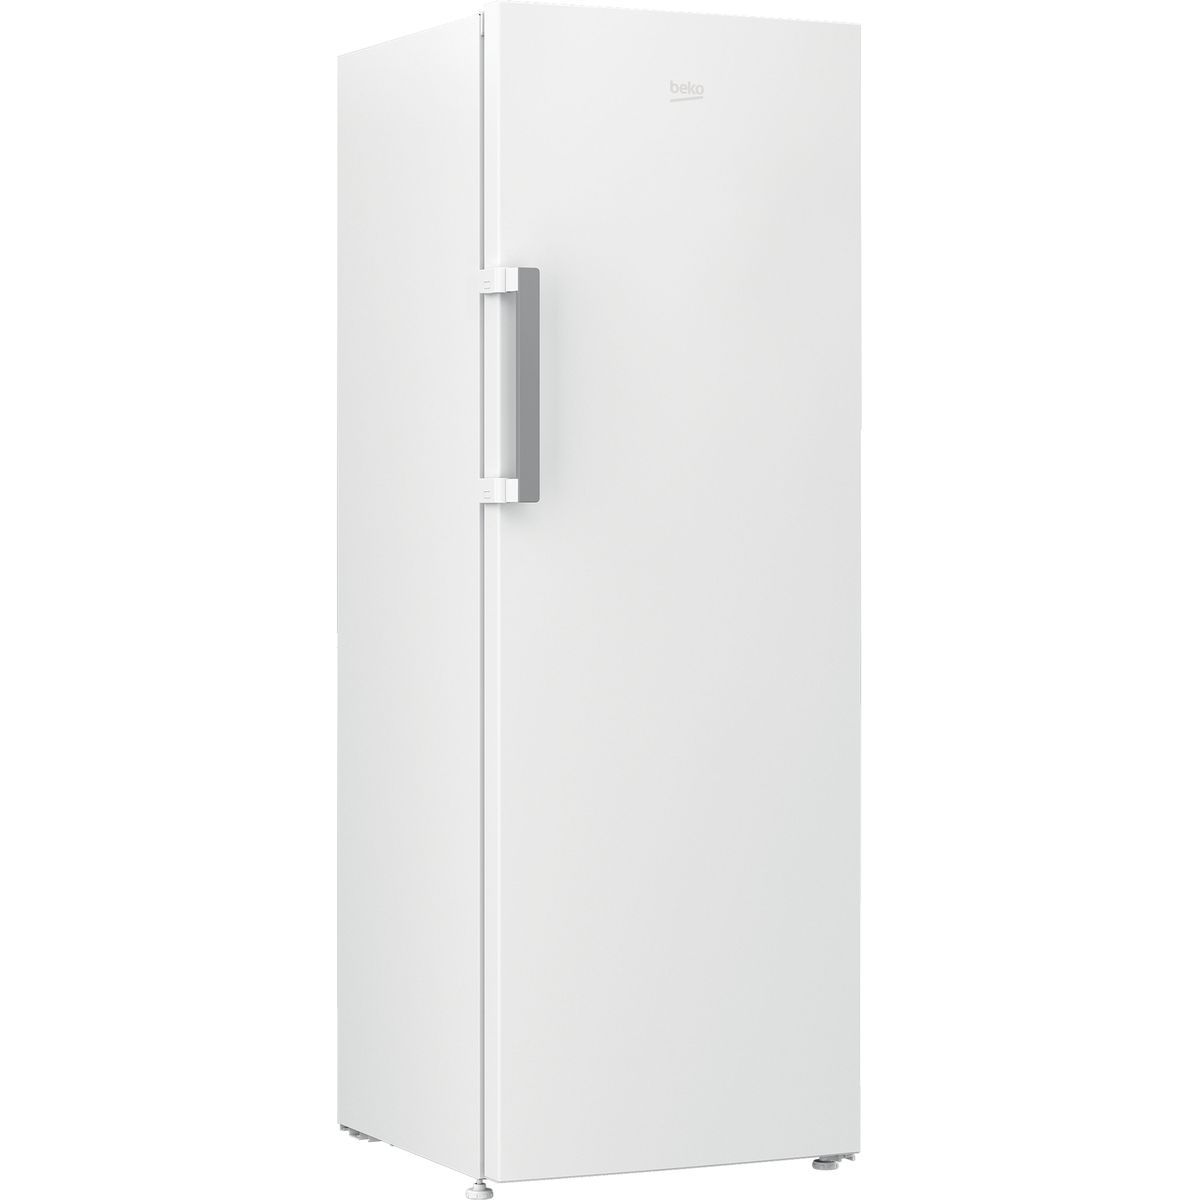 BEKO Réfrigérateur armoire RES44NWN, 381 L, Froid brassé